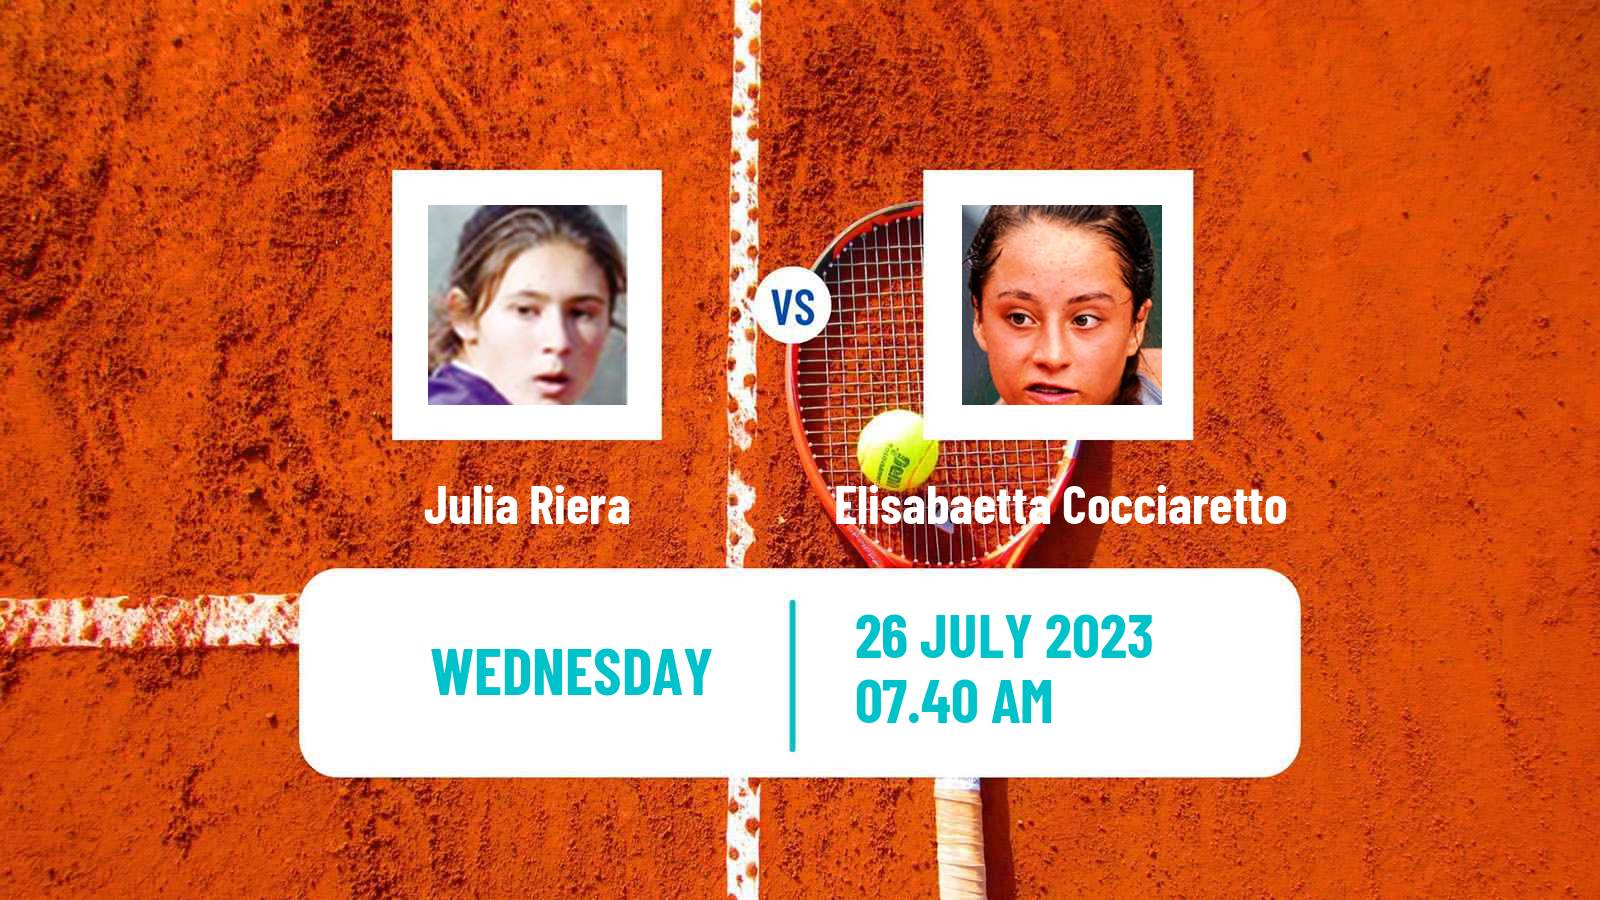 Tennis WTA Lausanne Julia Riera - Elisabaetta Cocciaretto